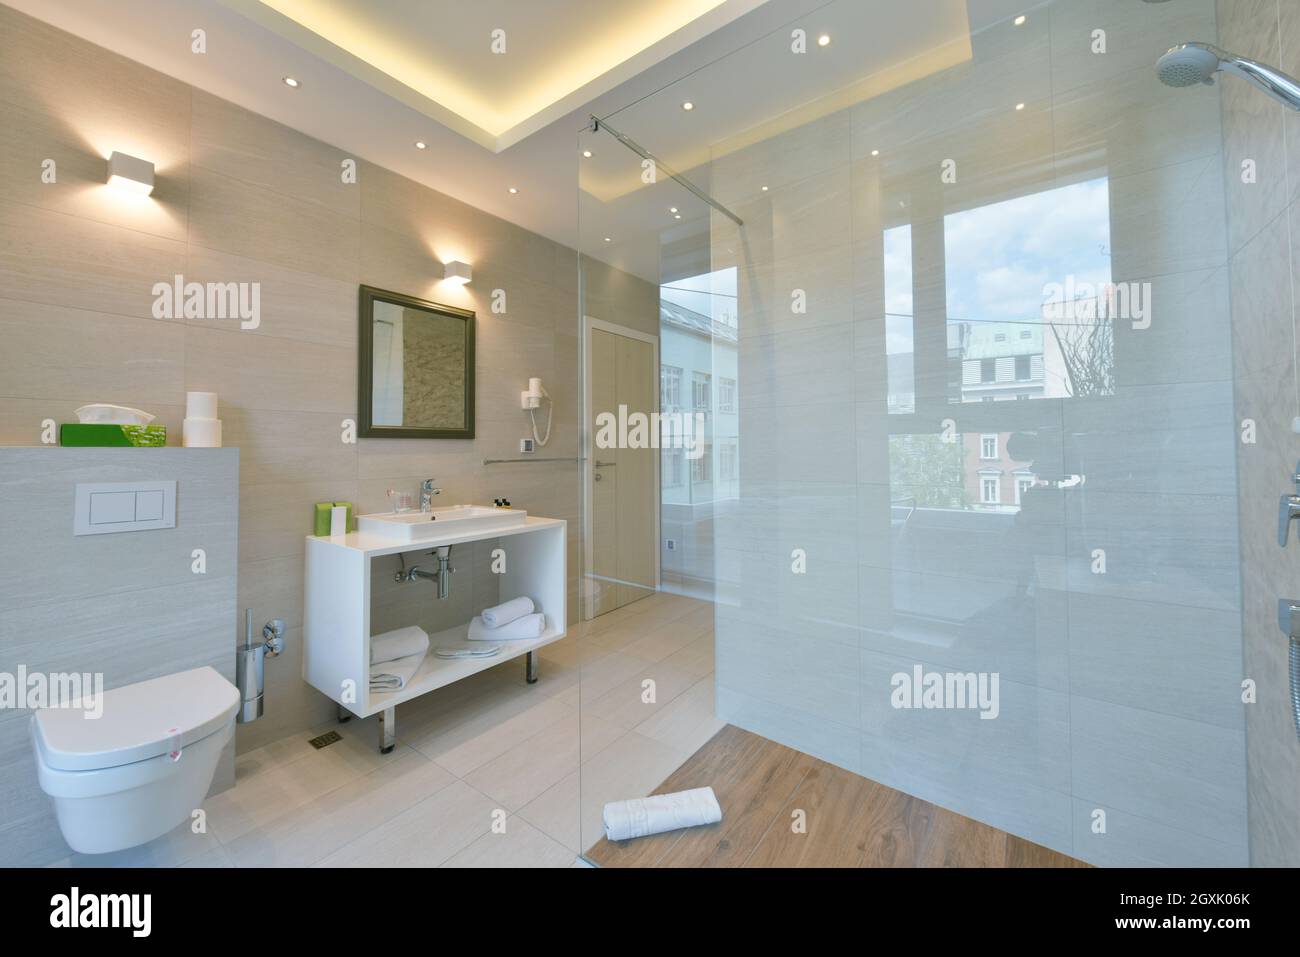 Moderne minimalistische Hotelbad mit Marmor Fliesen bedeckten Wände  Interieur Stockfotografie - Alamy